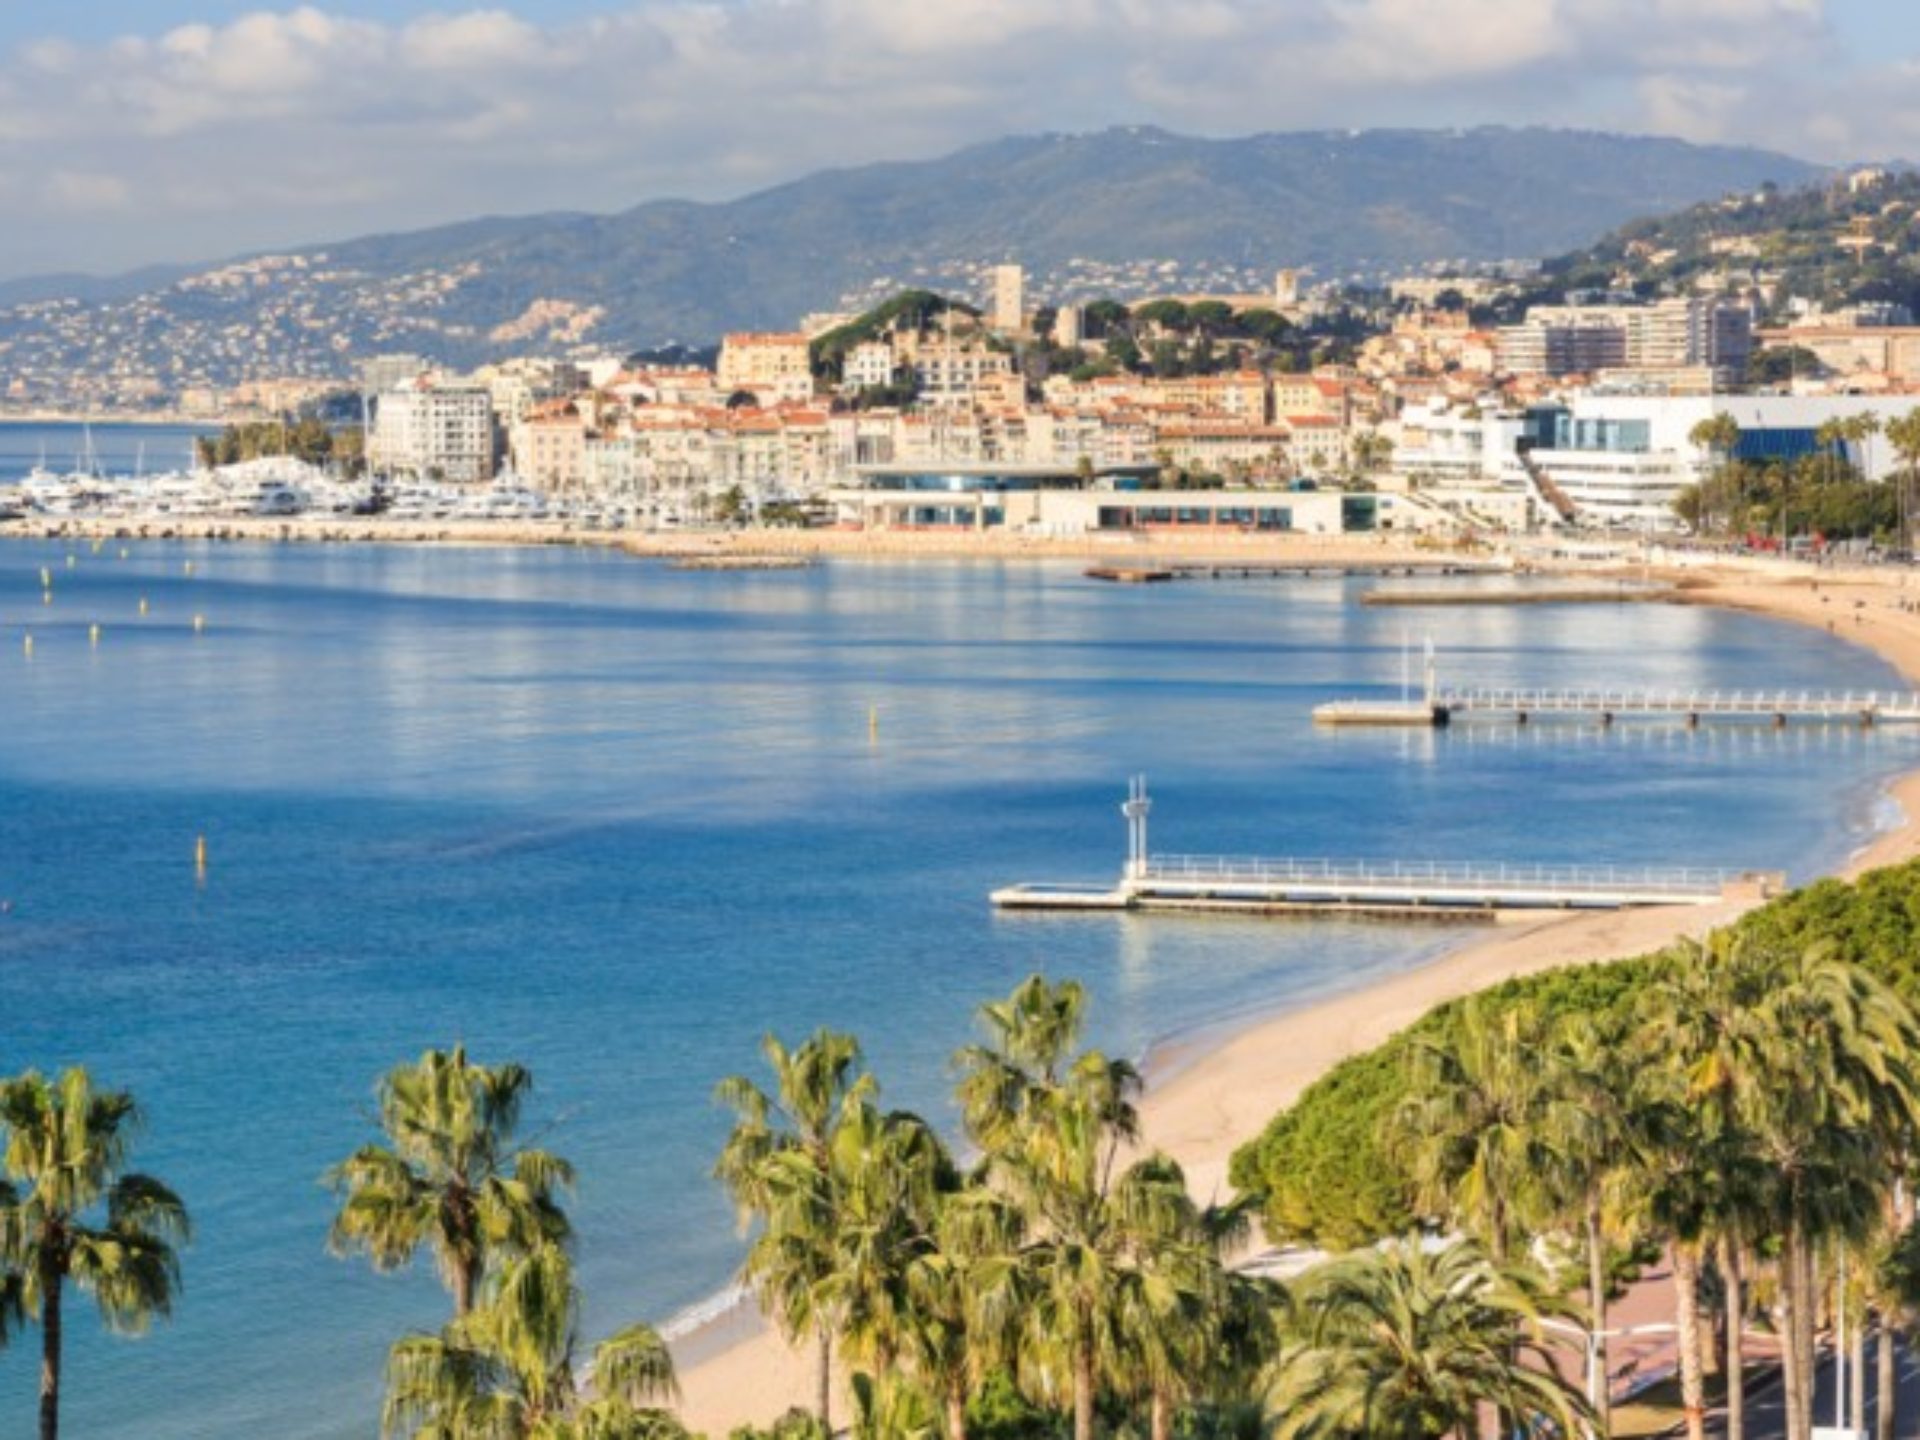 French Riviera Guided Tours l Cote d'Azur Tours l Liven Up Monaco